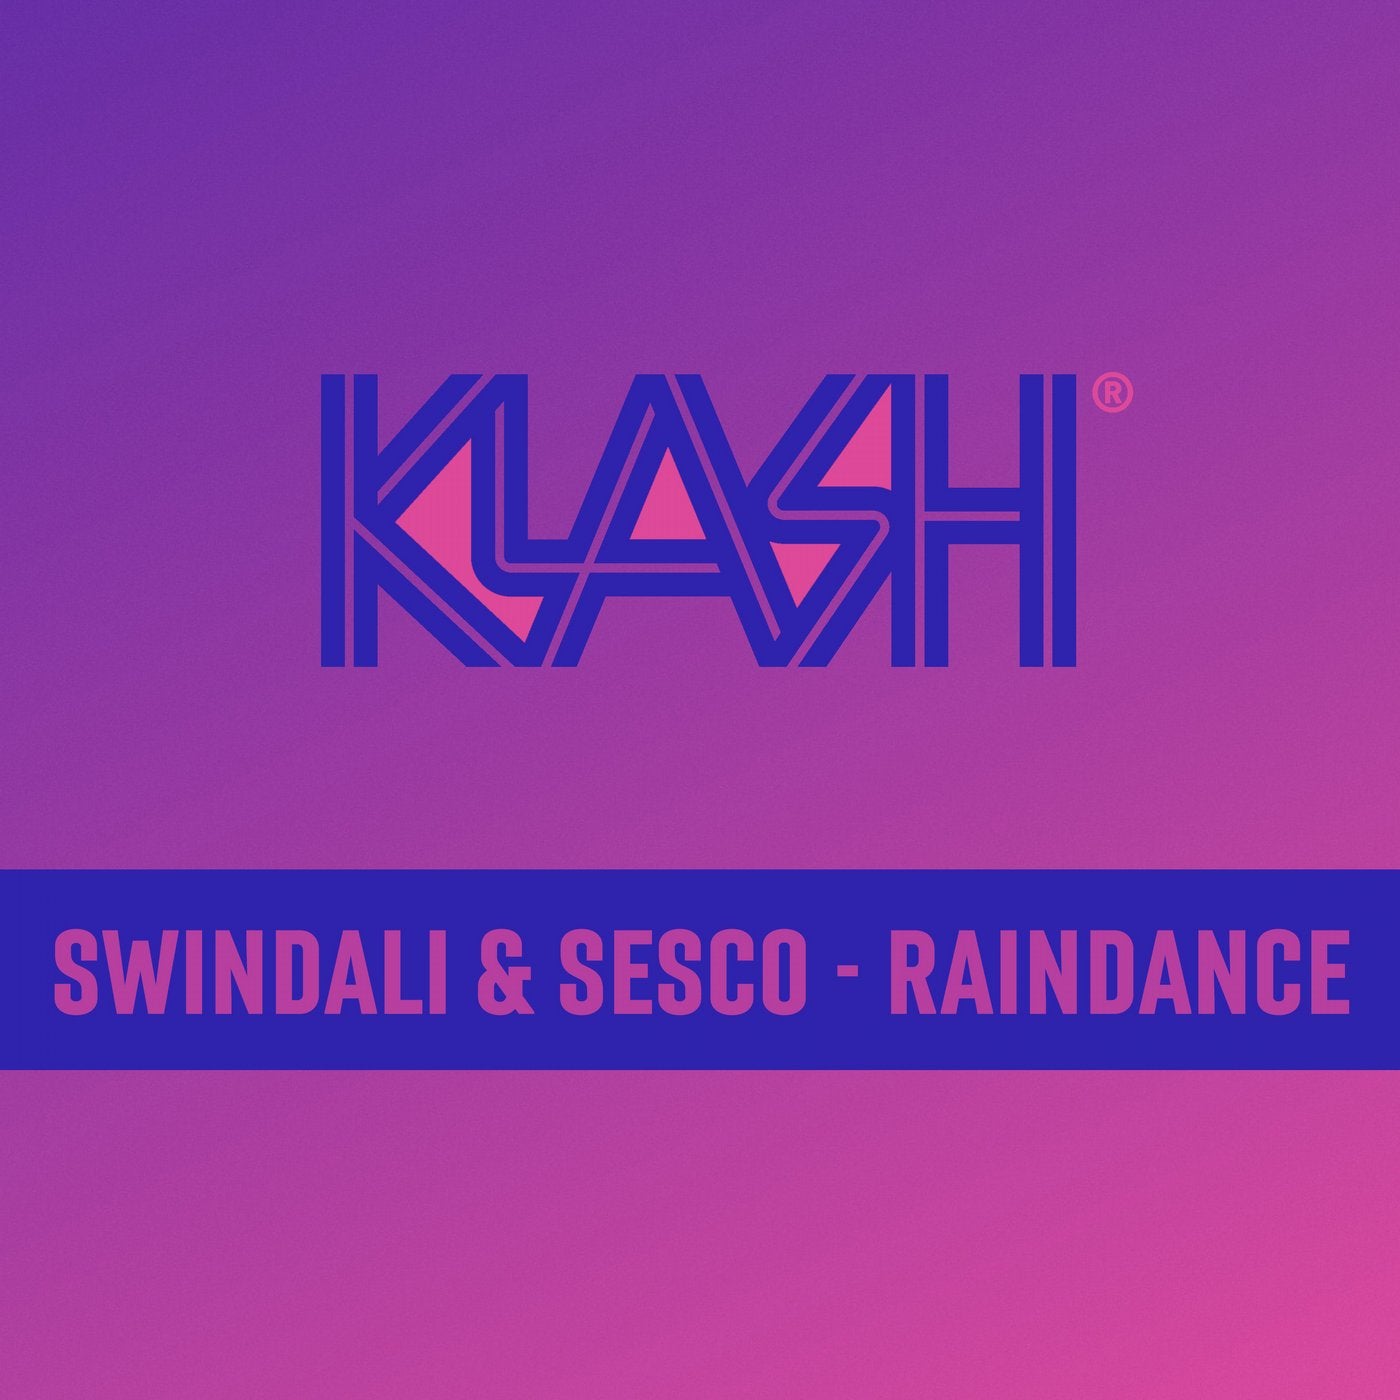 Raindance - Extended Mix